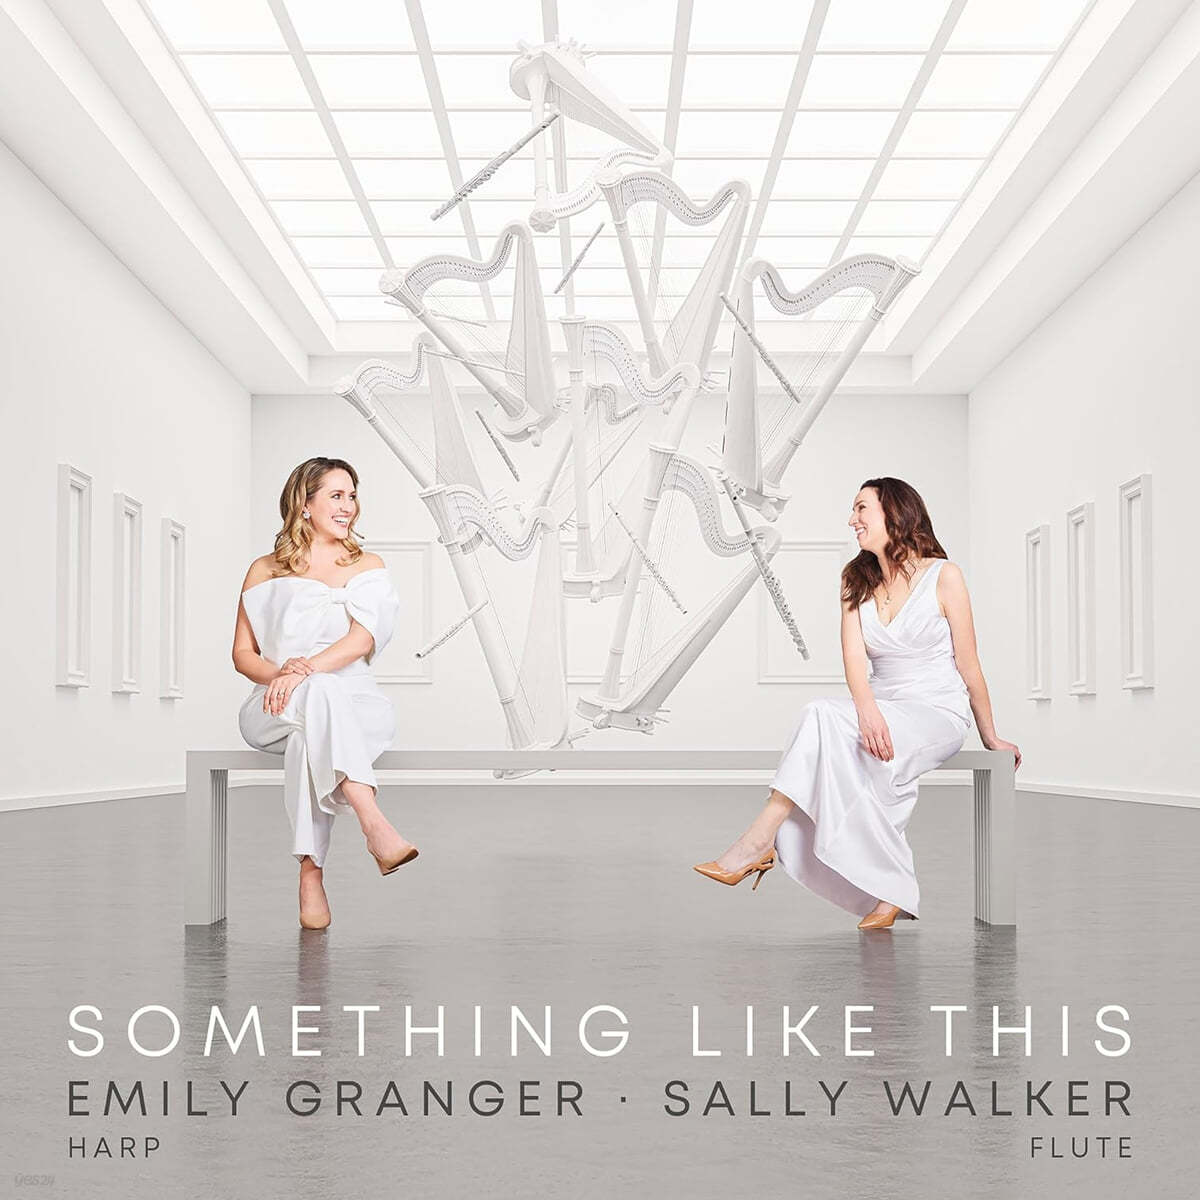 Emily Granger / Sally Walker 하프와 플루트를 위한 음악 (Something Like This - Music for Flute & Harp)